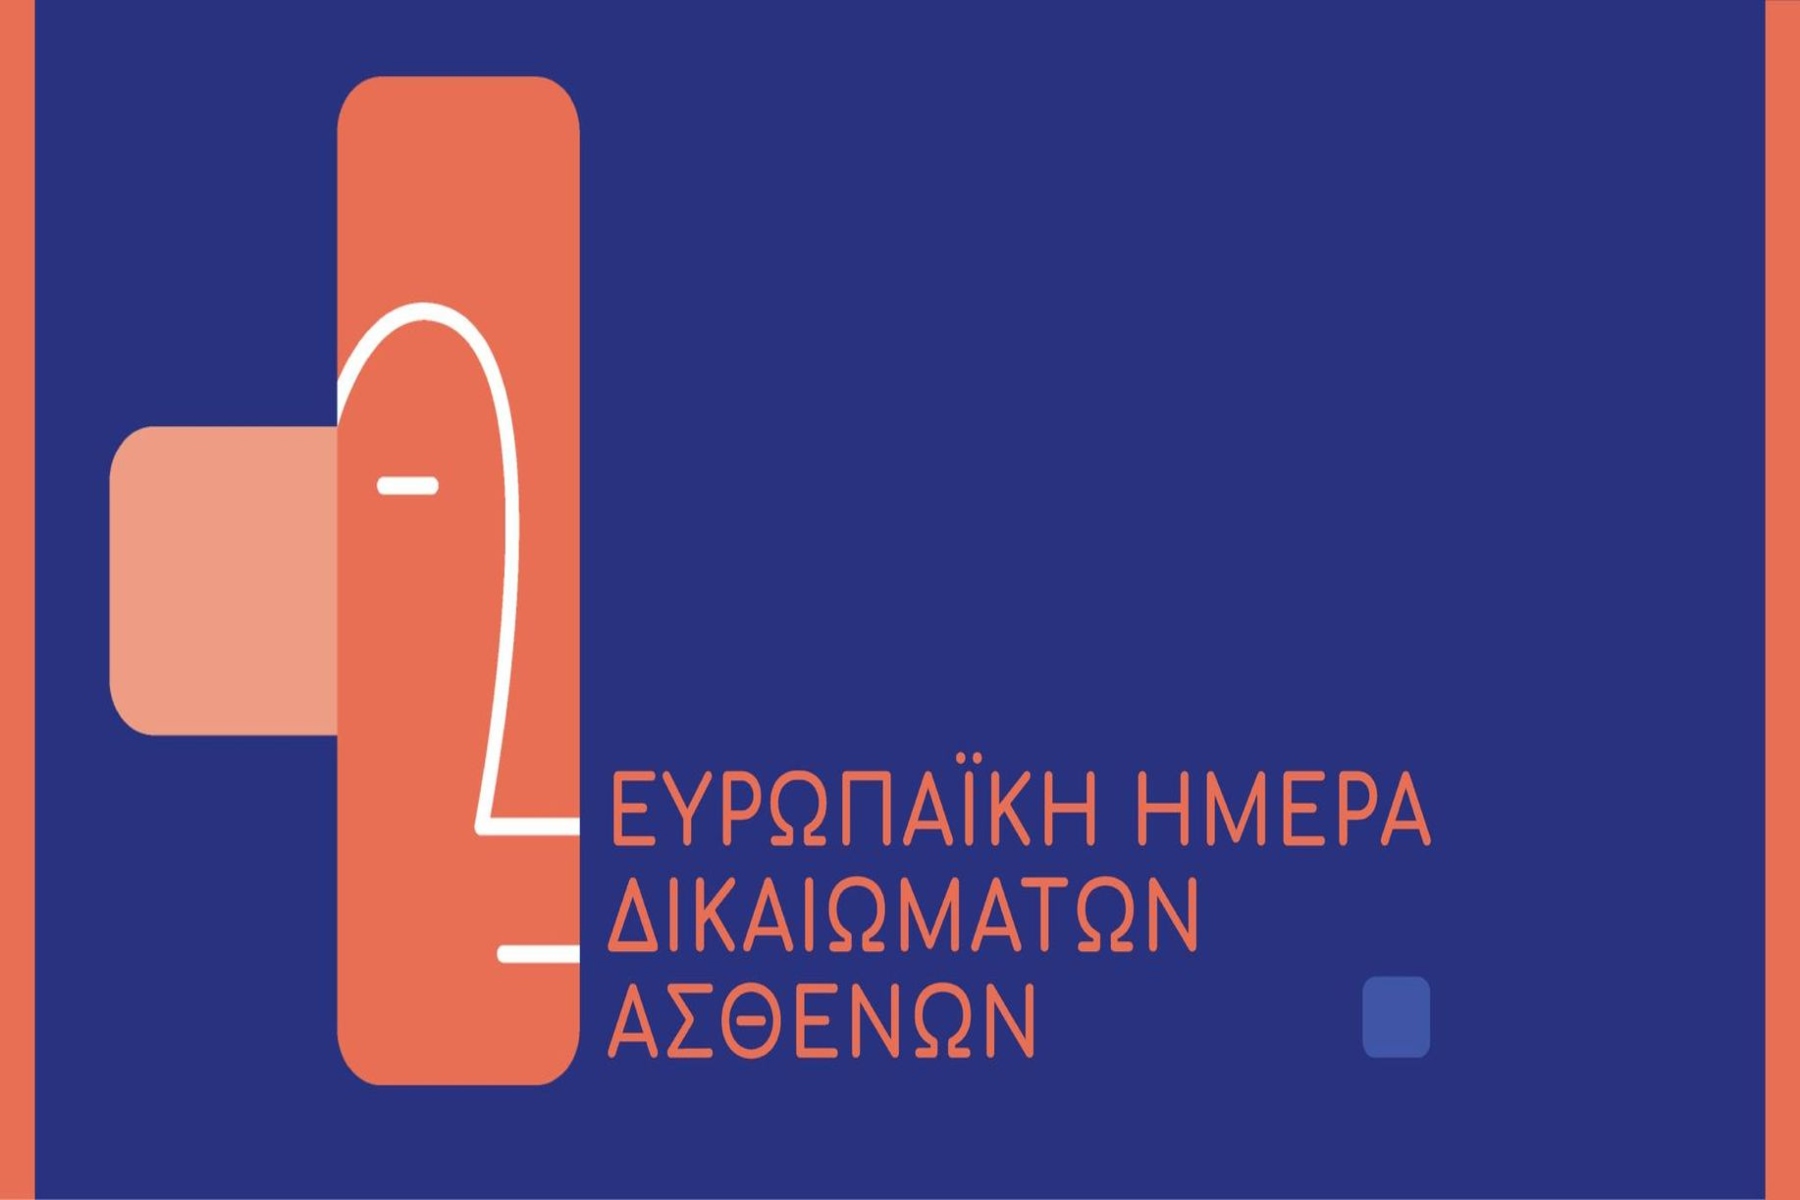 Ένωση Ασθενών Ελλάδας: Εκδήλωση 18/4 για την Ευρωπαϊκή Ημέρα Δικαιωμάτων Ασθενών